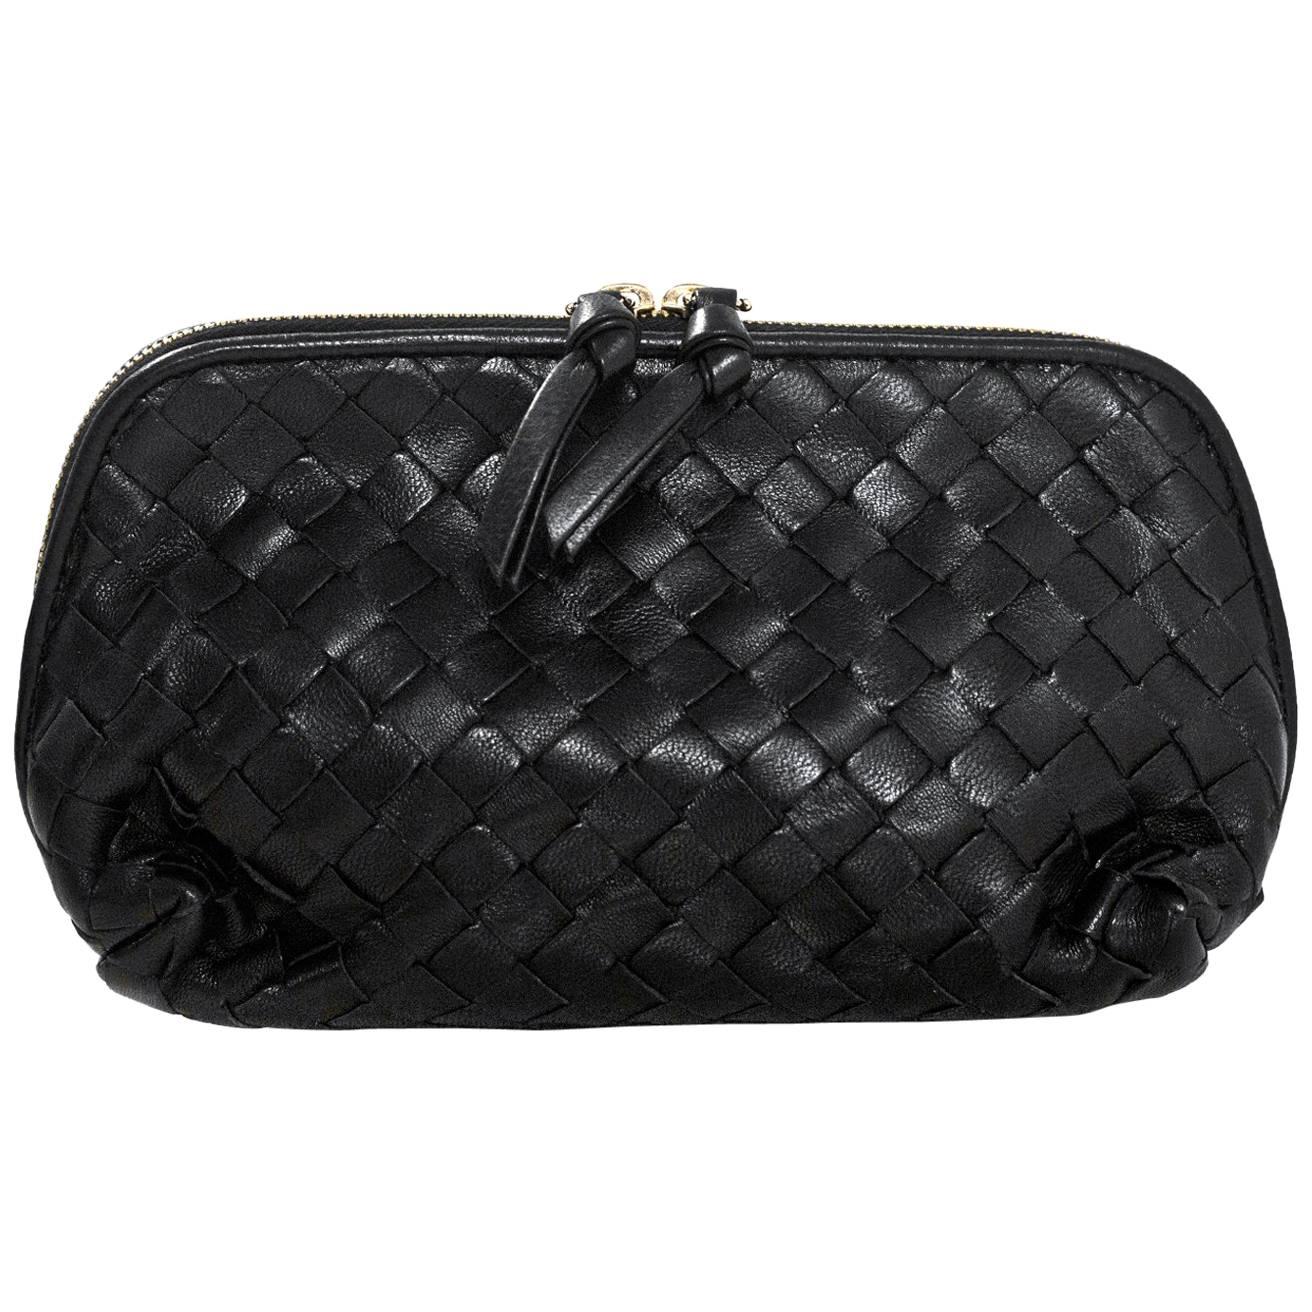 Bottega Veneta Black Woven Leather Intrecciato Small Cosmetic Bag